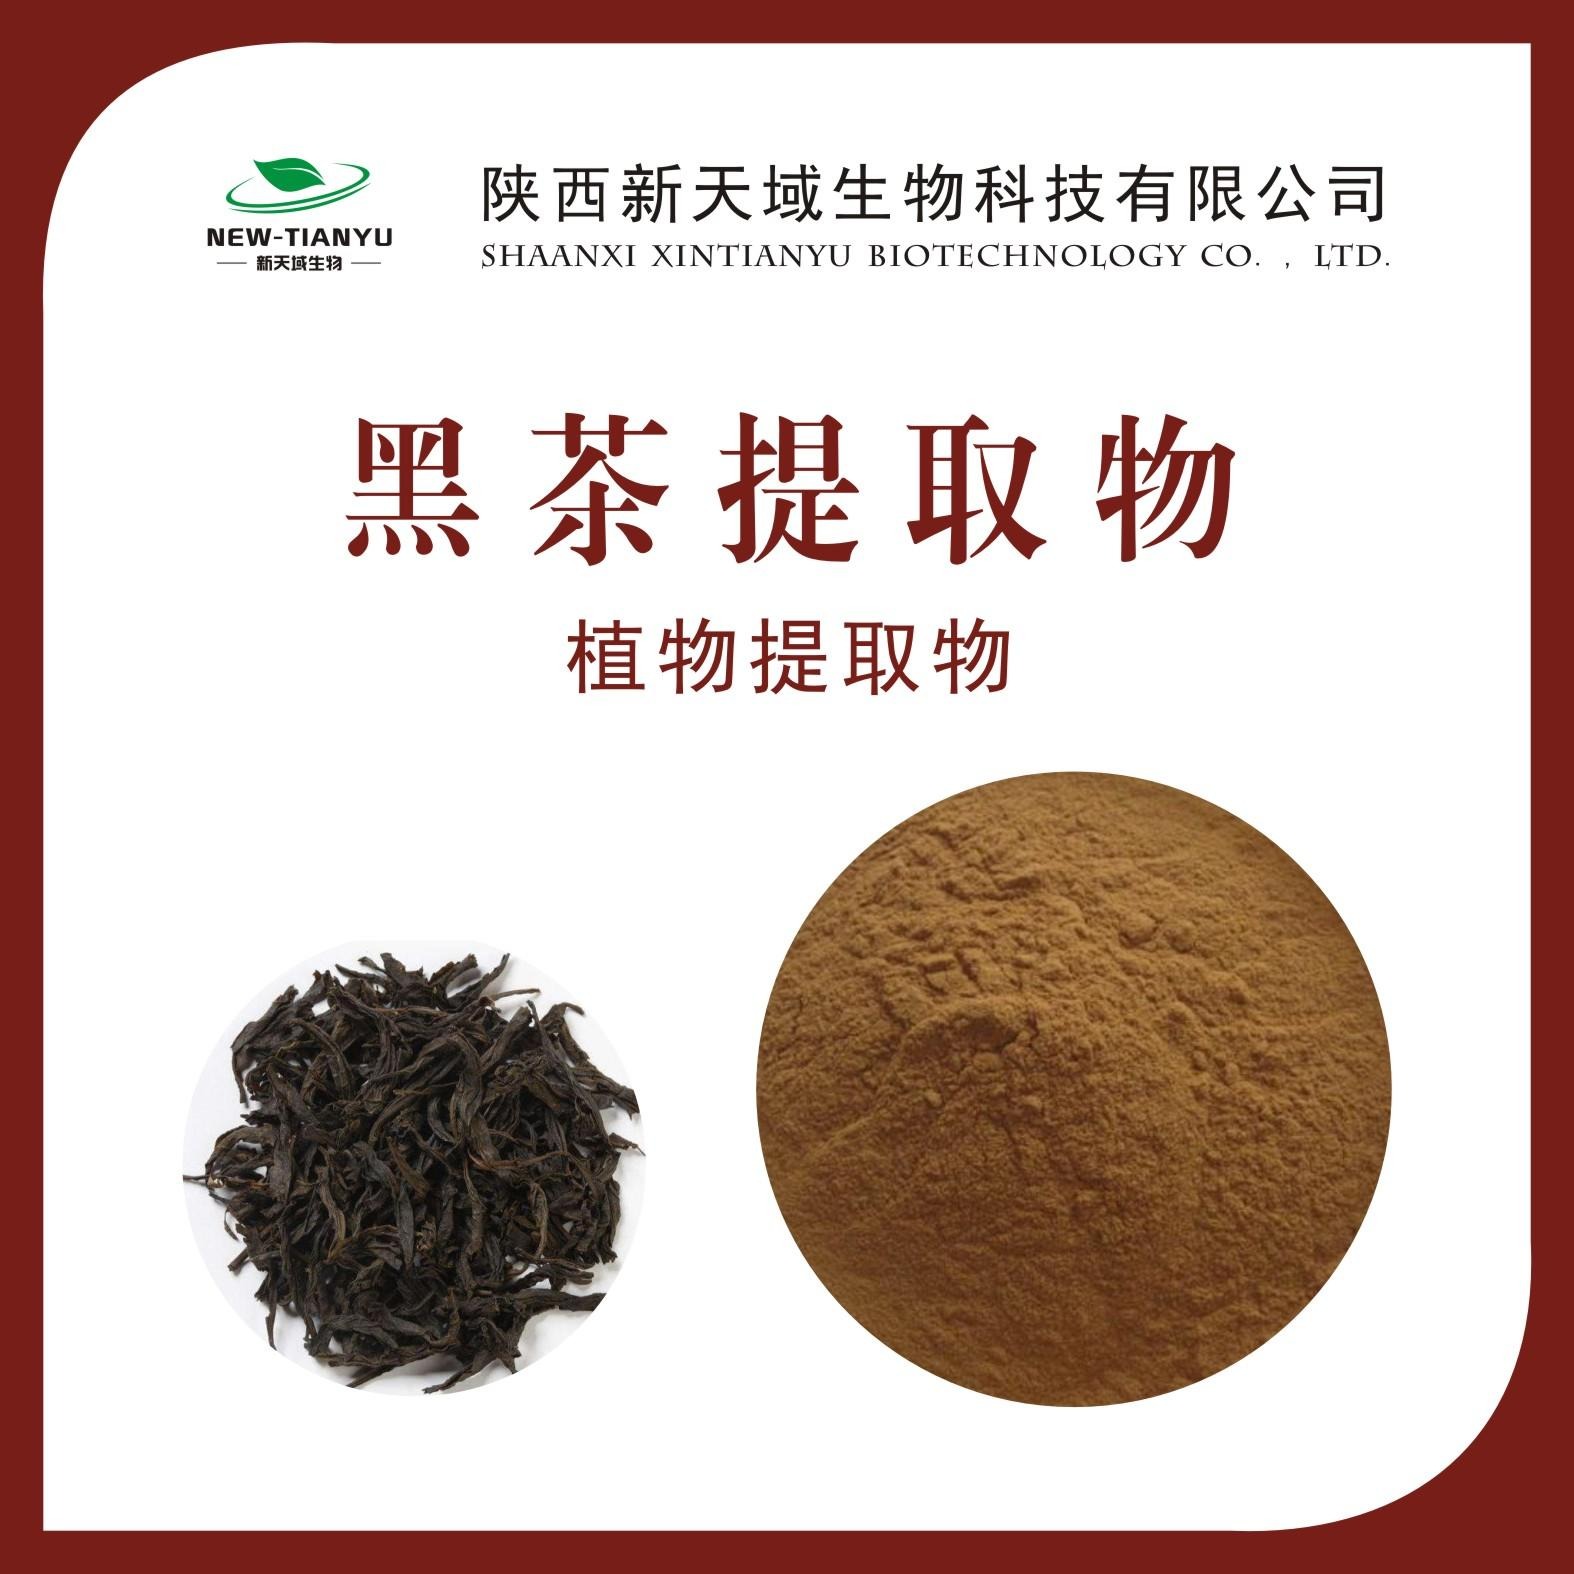 黑茶提取物 黑茶浓缩粉 黑茶喷雾干燥粉 黑茶粉 生产厂家 现货保邮图片